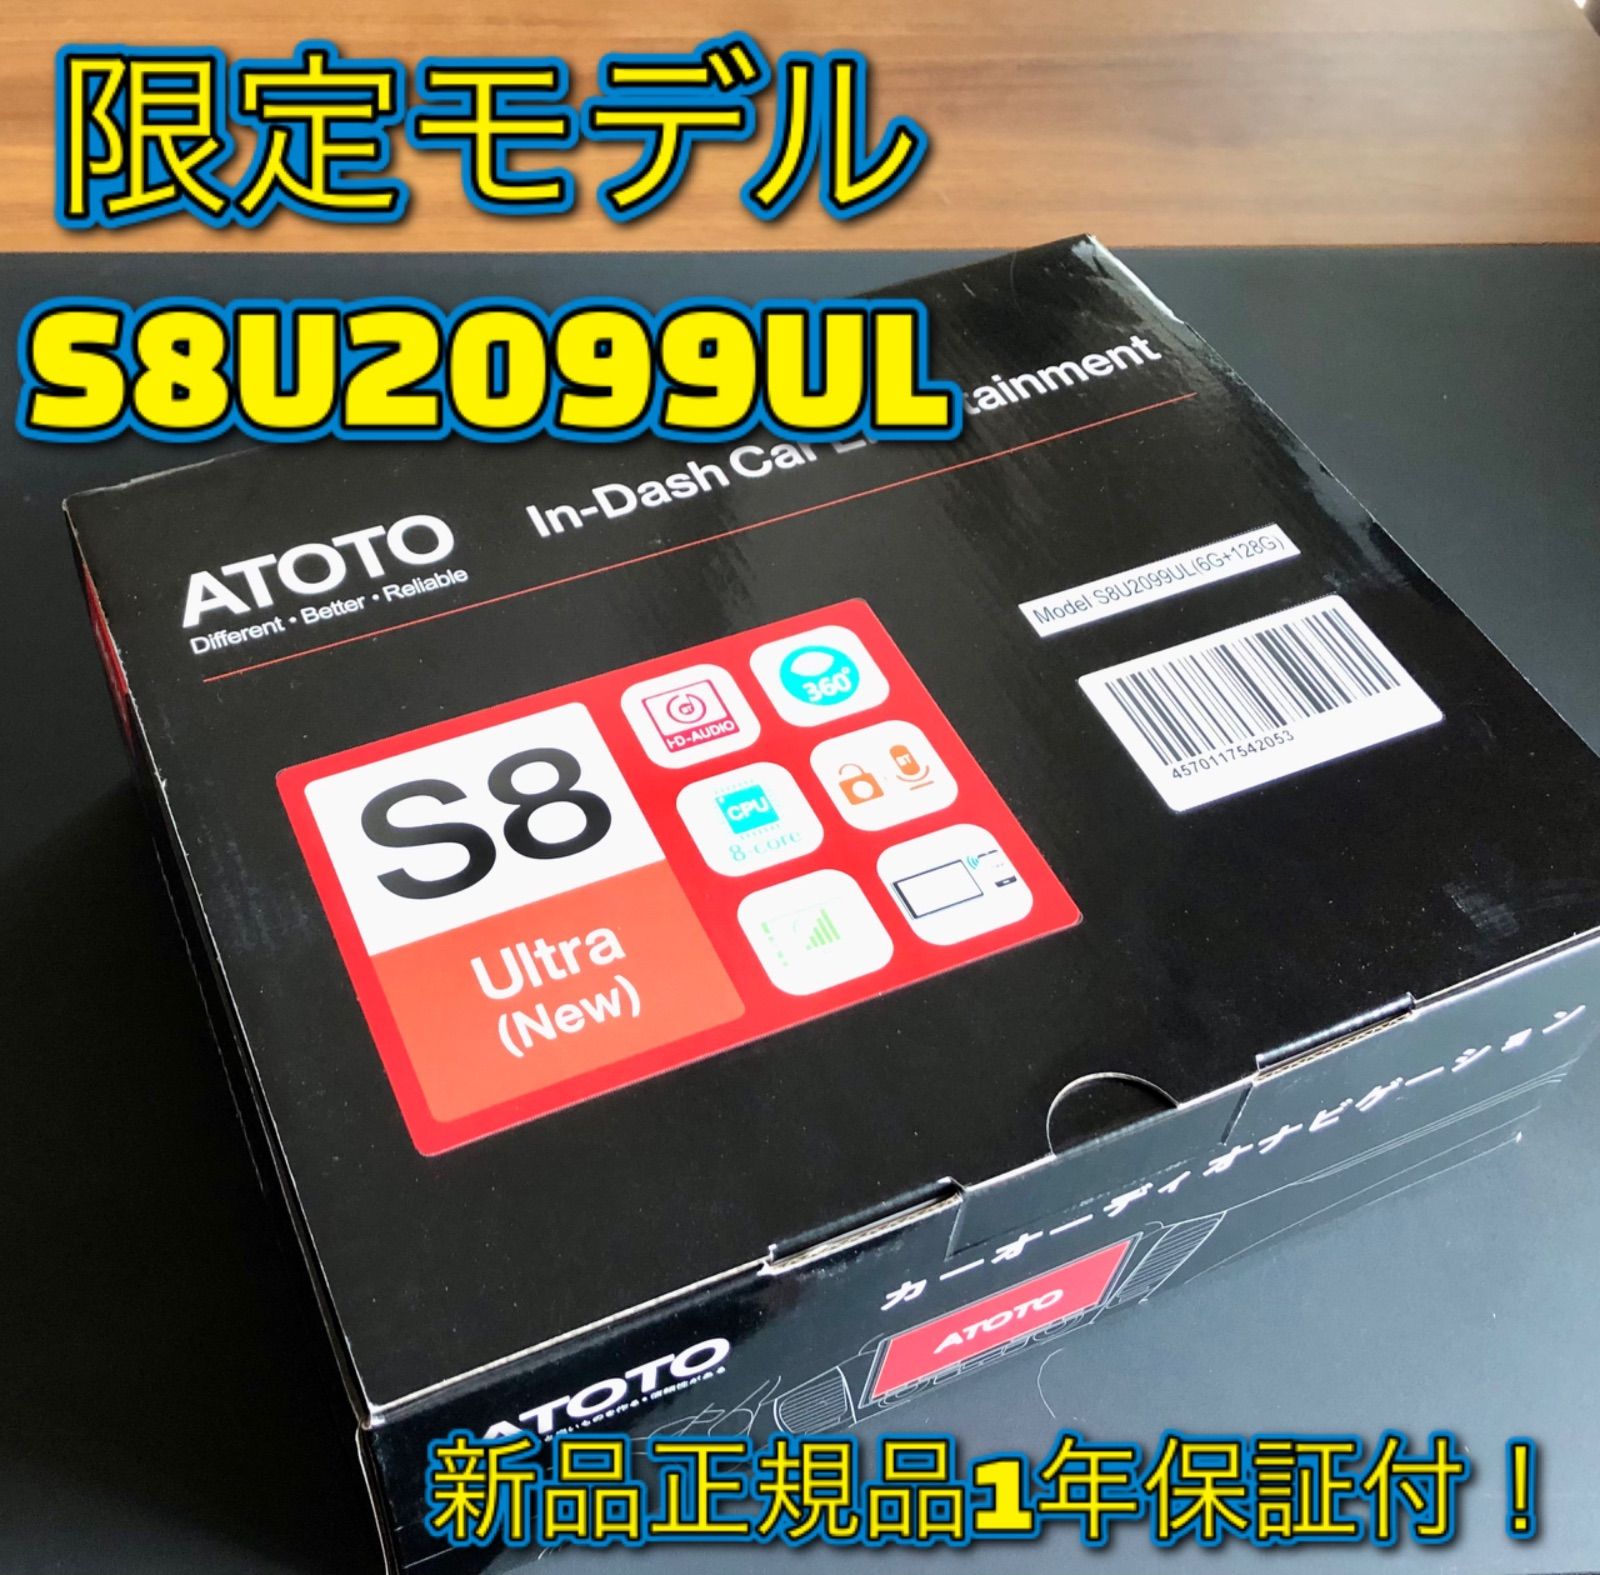 限定モデル ATOTO S8U2099ULウルトラ 9インチ6G+128G 4G LTEモデム内蔵 ...